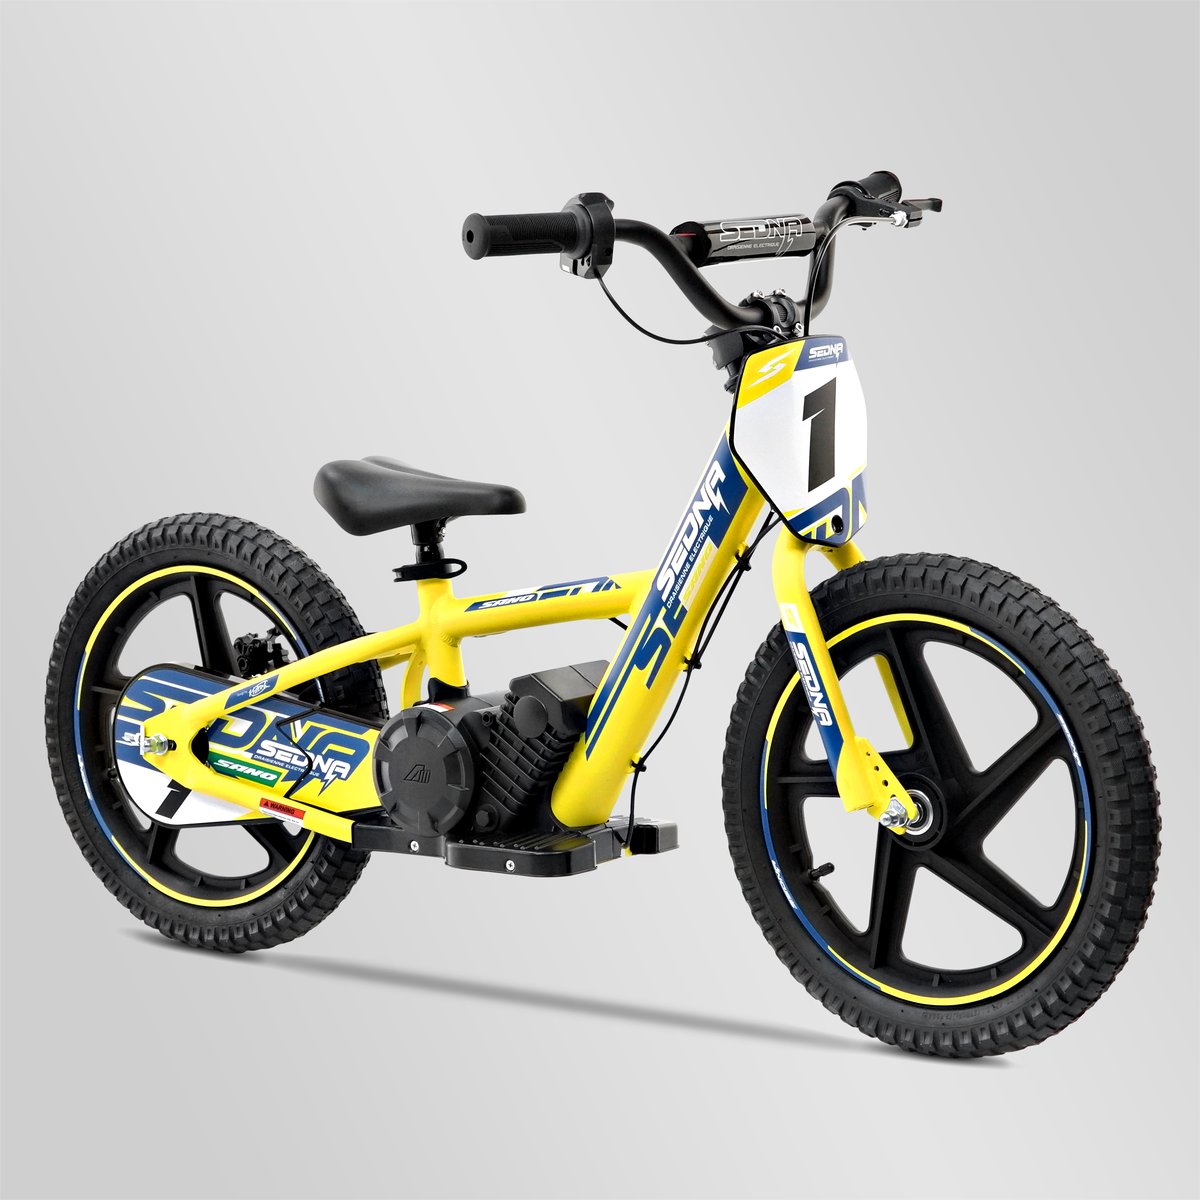 Draisienne électrique apollo sedna 16" 250w, Minimoto et Dirt Bike |  Smallmx - Dirt bike, Pit bike, Quads, Minimoto